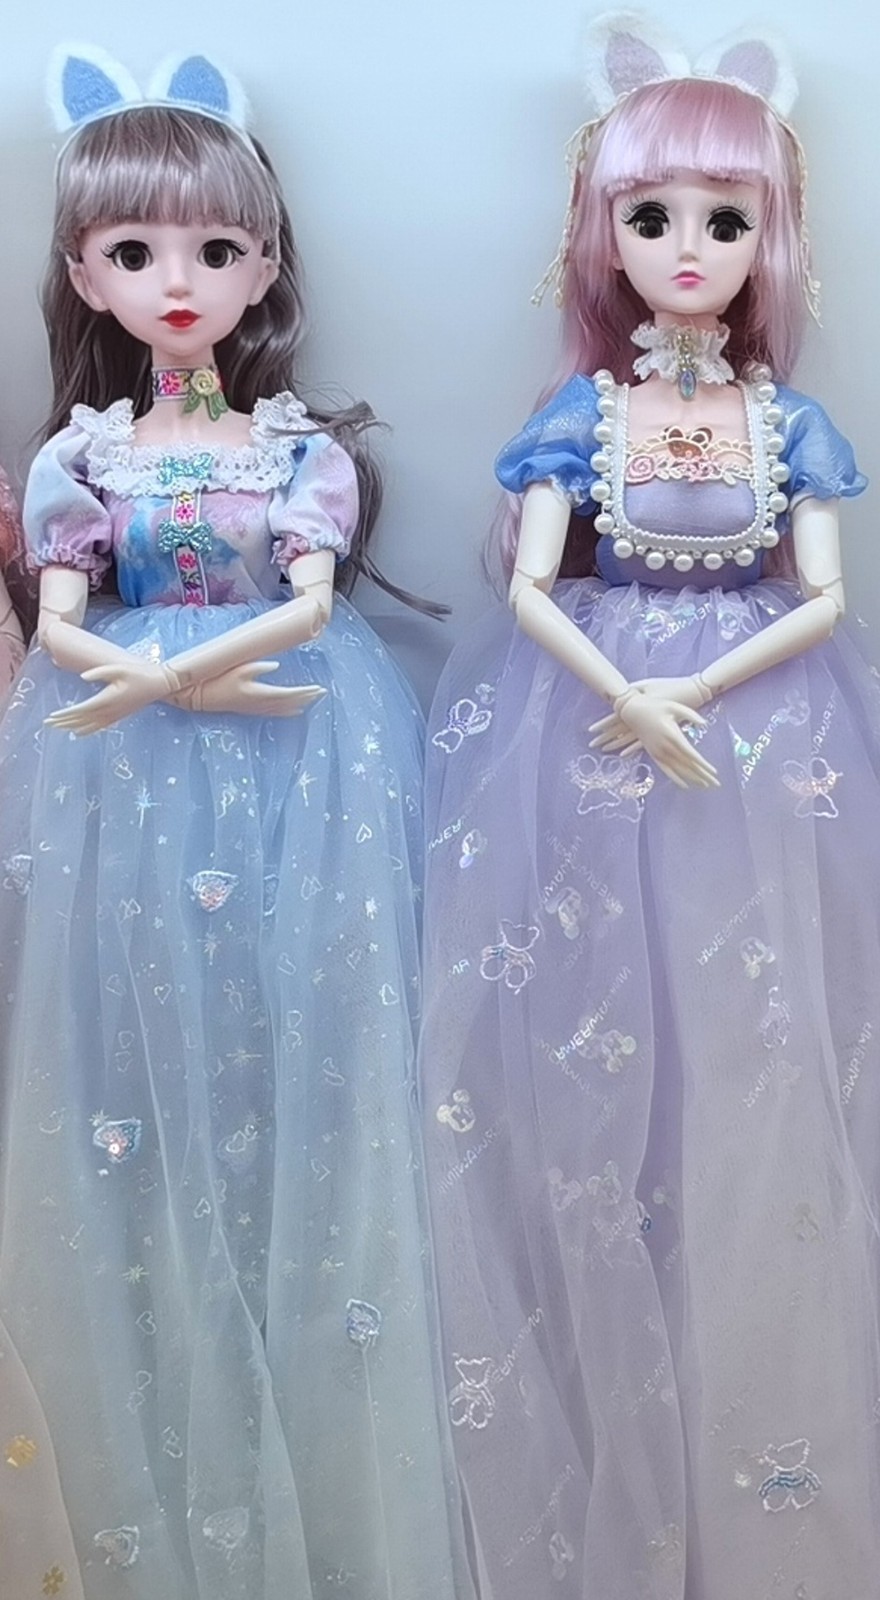 义乌市悦欣玩具厂生产销售各种芭比娃娃系列产品